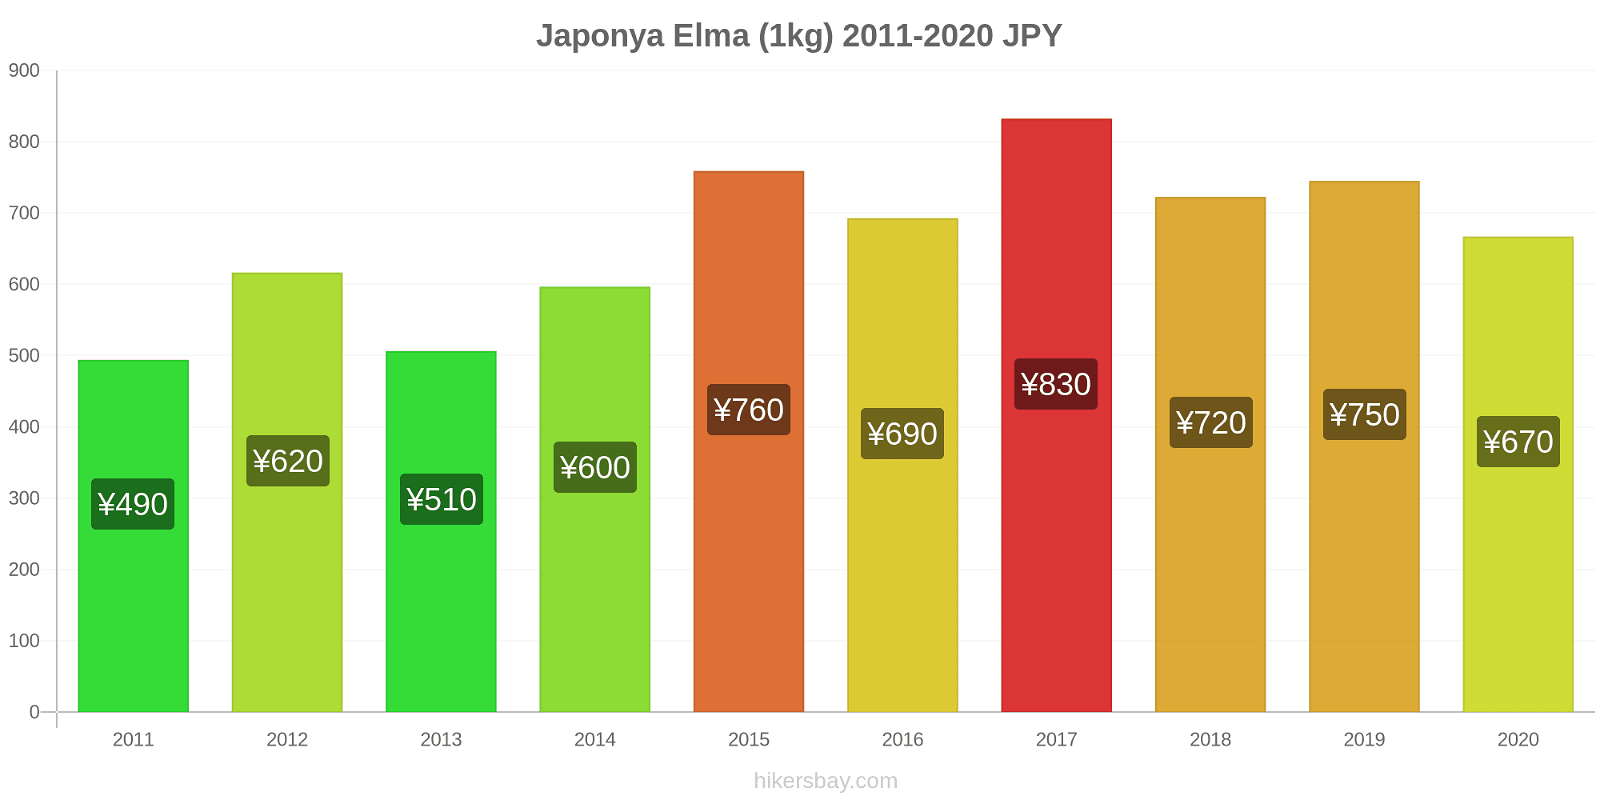 Japonya fiyat değişiklikleri Elma (1kg) hikersbay.com